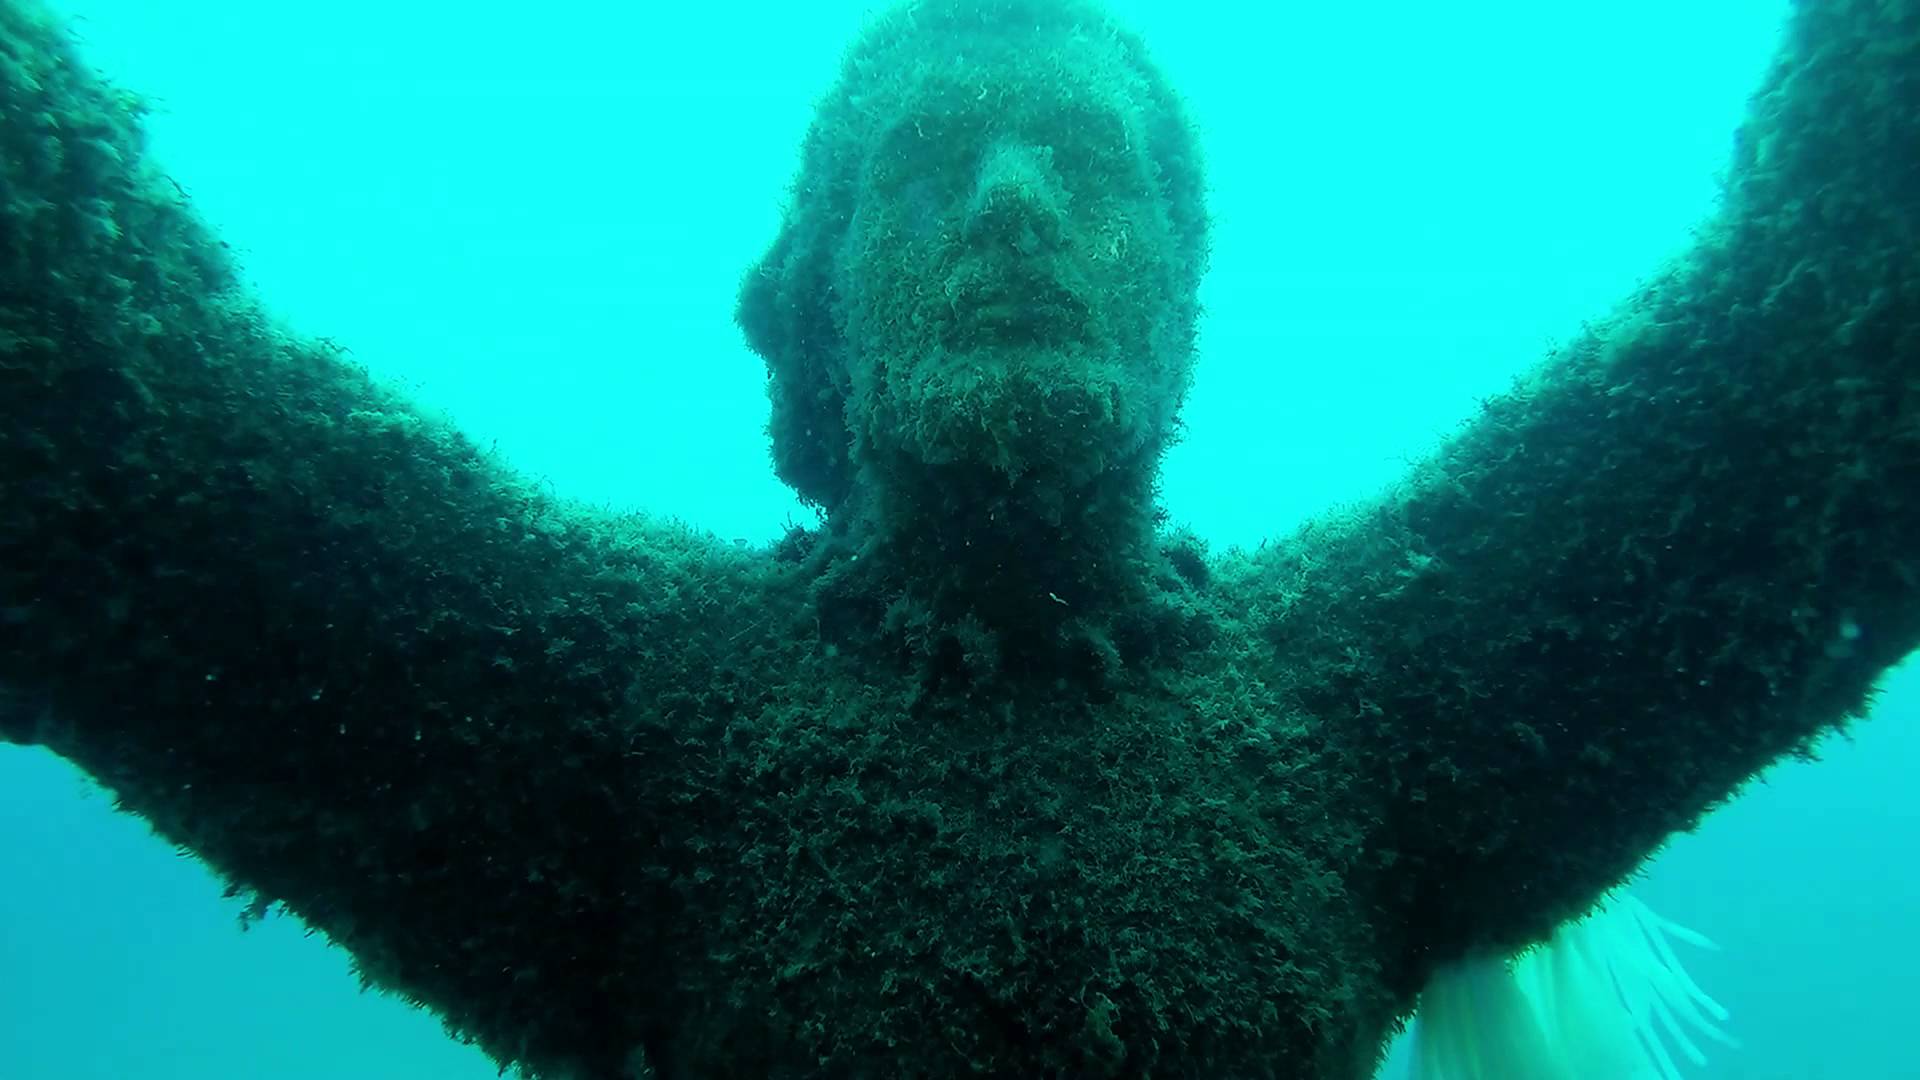 Le statue immerse in acqua da vedere in immersione